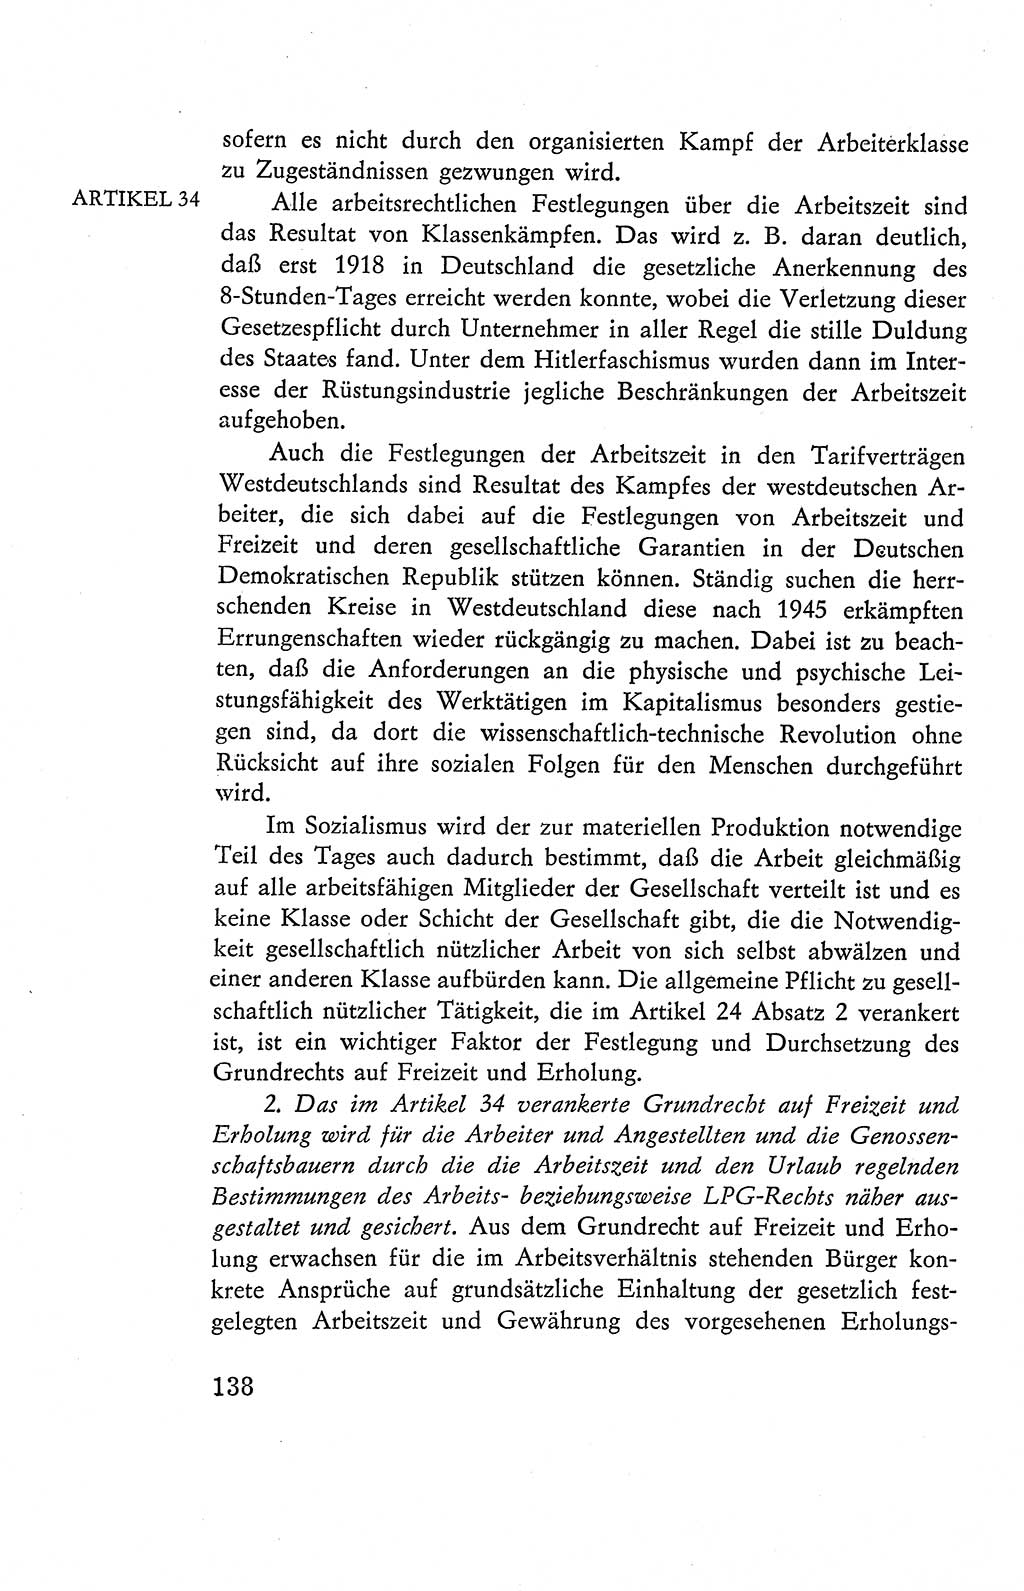 Verfassung der Deutschen Demokratischen Republik (DDR), Dokumente, Kommentar 1969, Band 2, Seite 138 (Verf. DDR Dok. Komm. 1969, Bd. 2, S. 138)